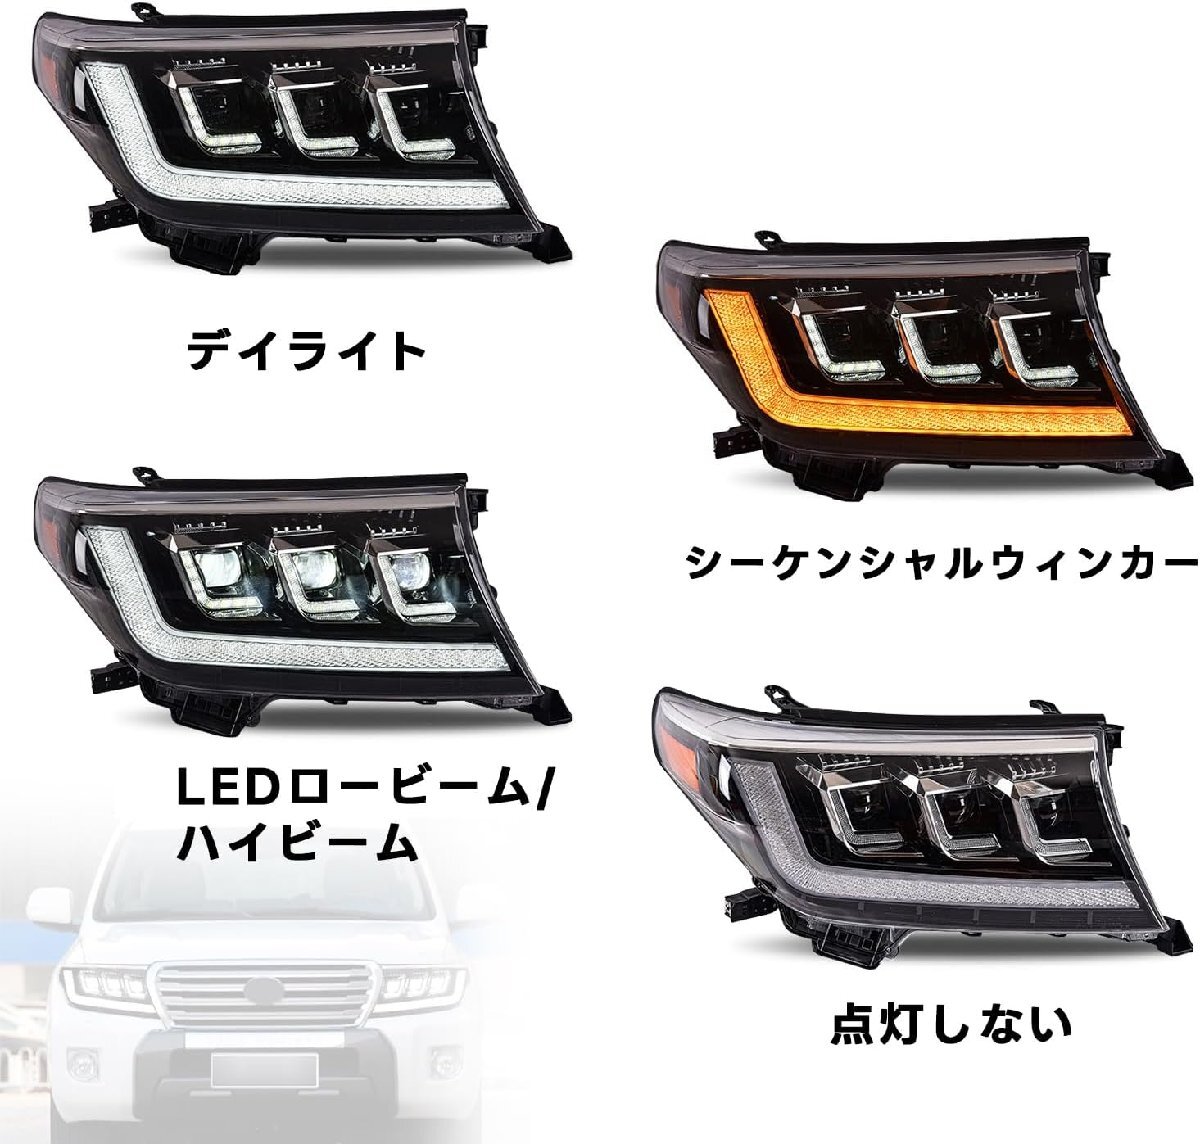  Toyota Land Cruiser 200 серия передняя фара UZJ200W URJ202W type все LED текущий .u in - левый и правый в комплекте FOR Toyota Landes cruiser 2007-2015 год 